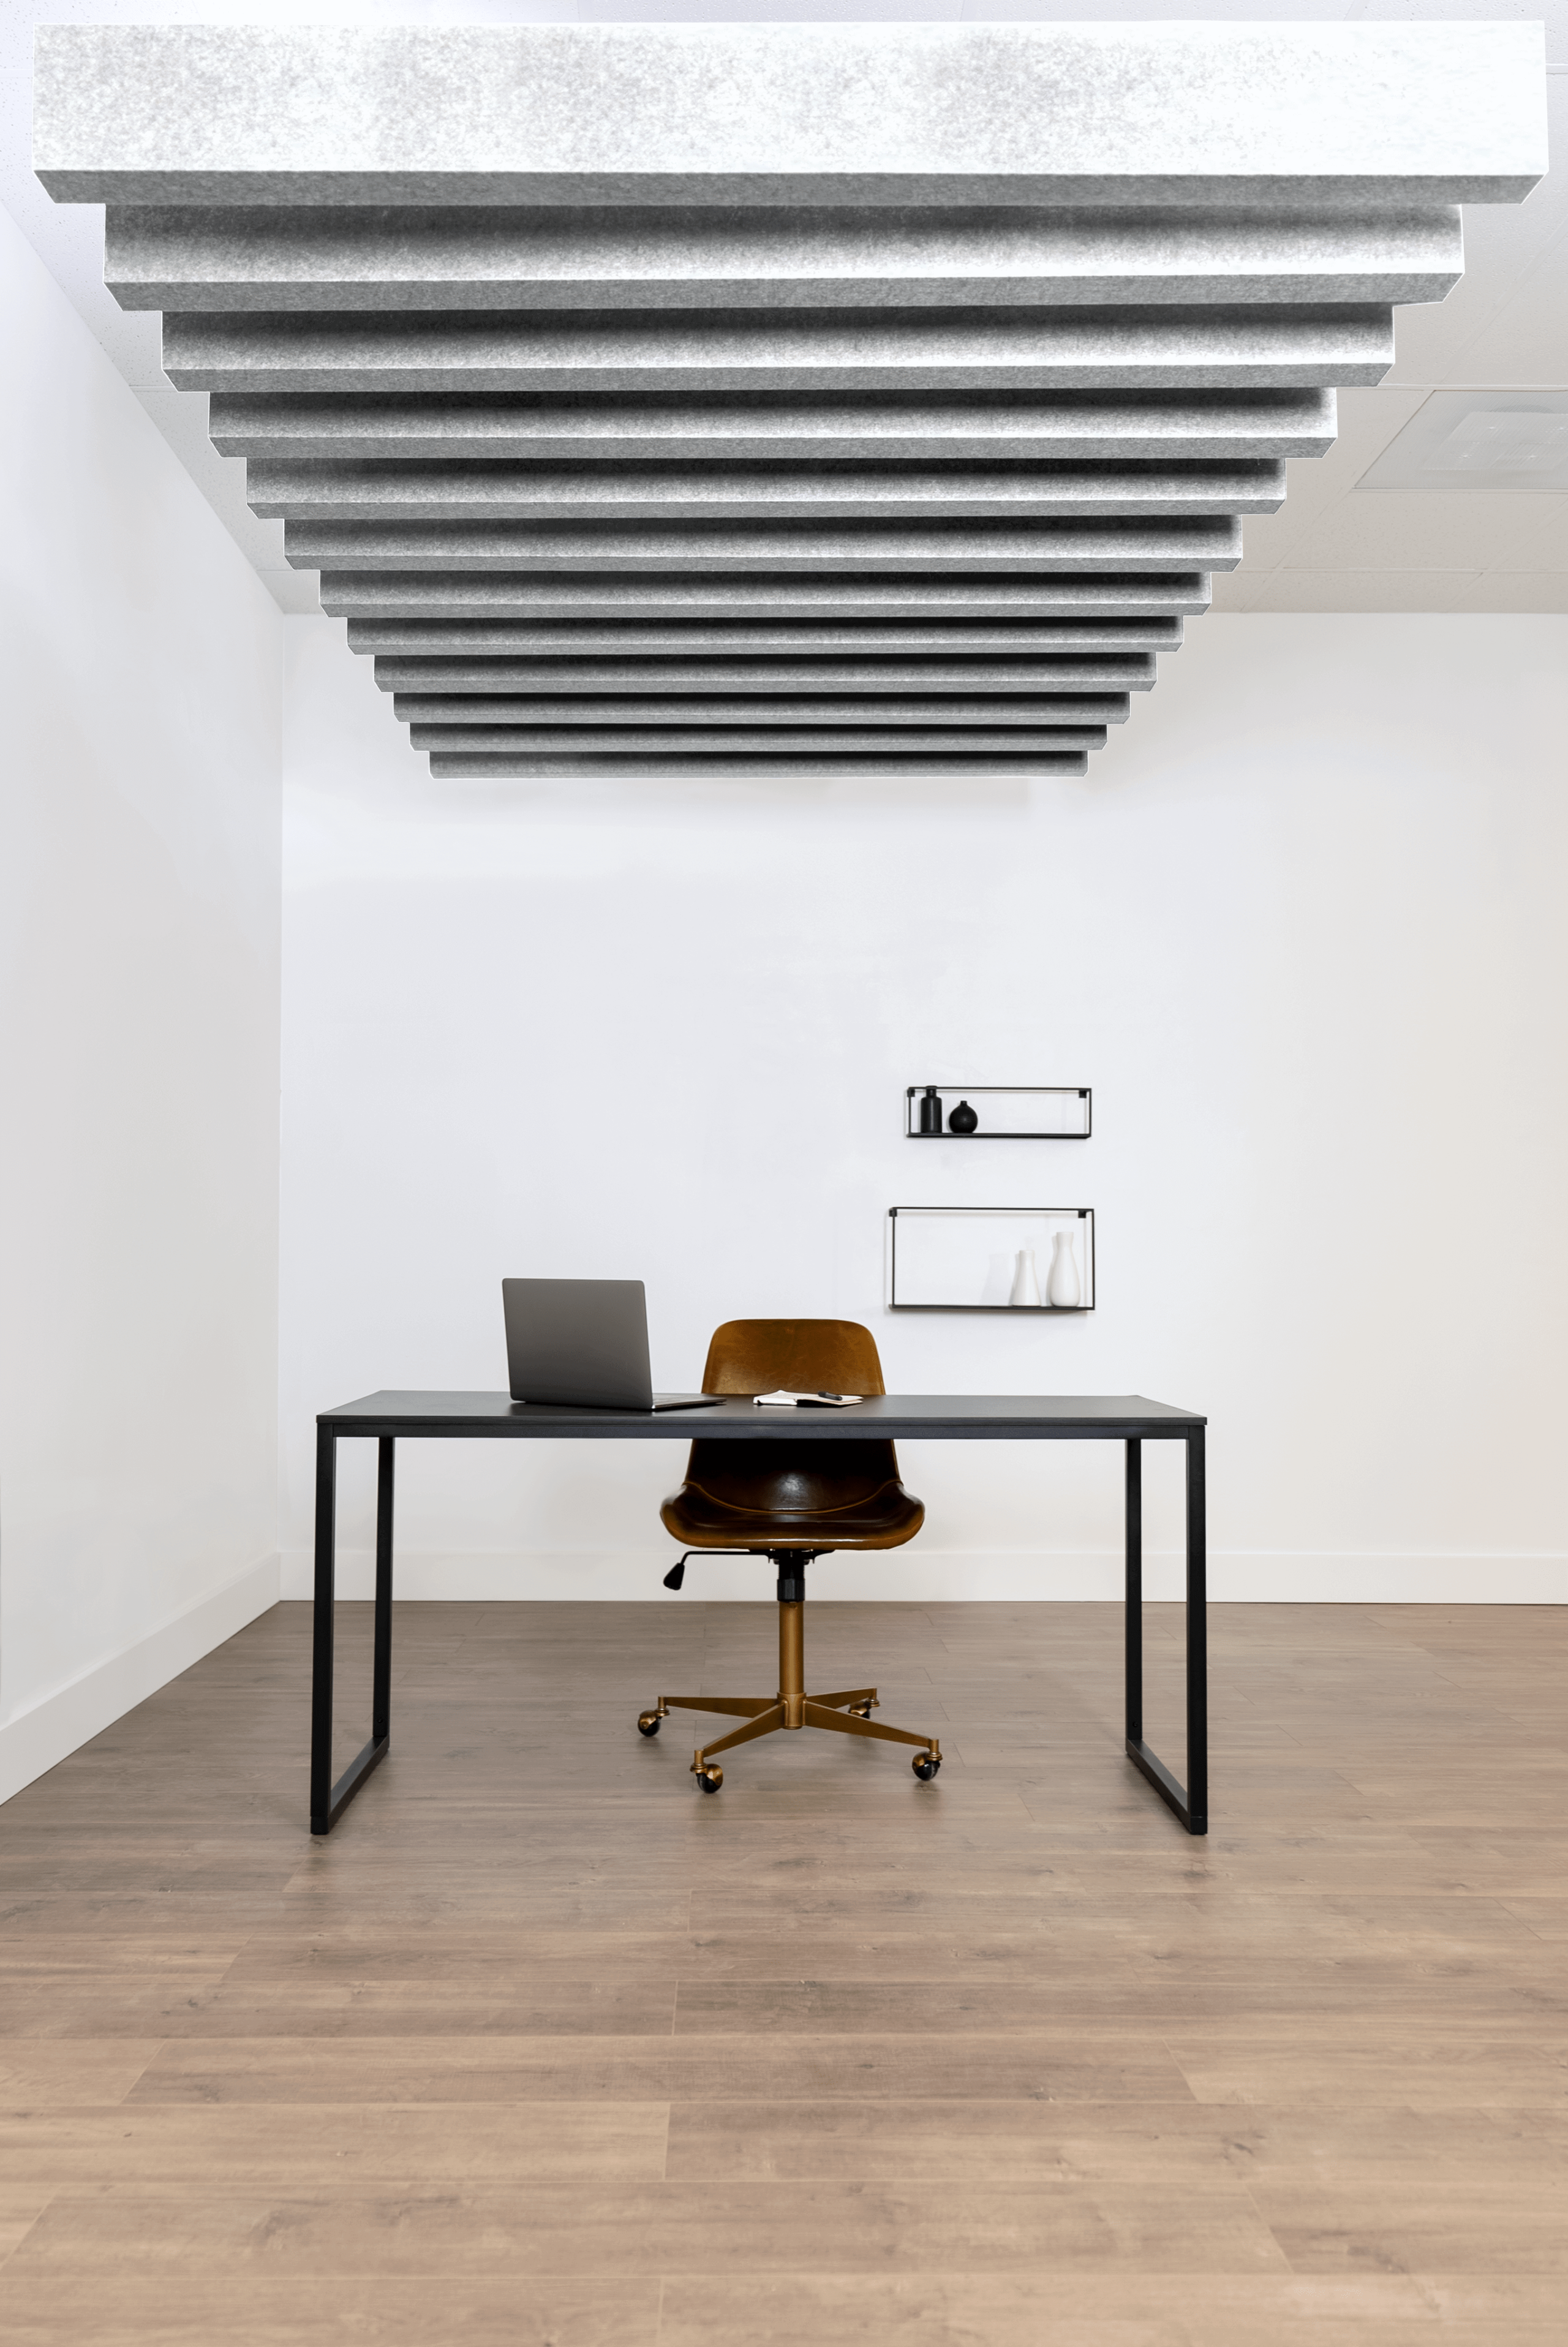 Joist acoustic ceiling baffles in an open office